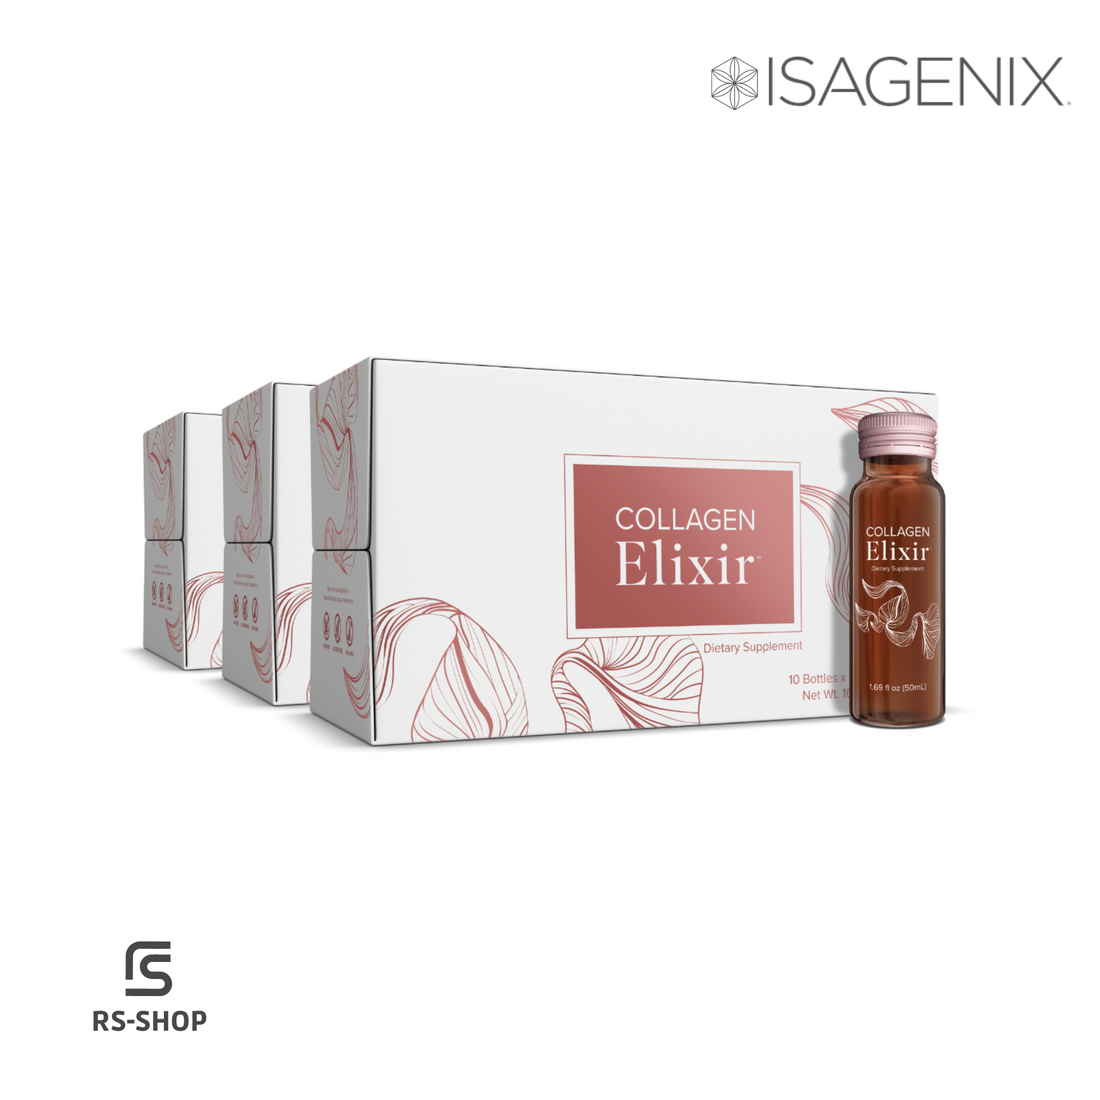 ISAGENIX - Collagen Elixir - 30 bottles